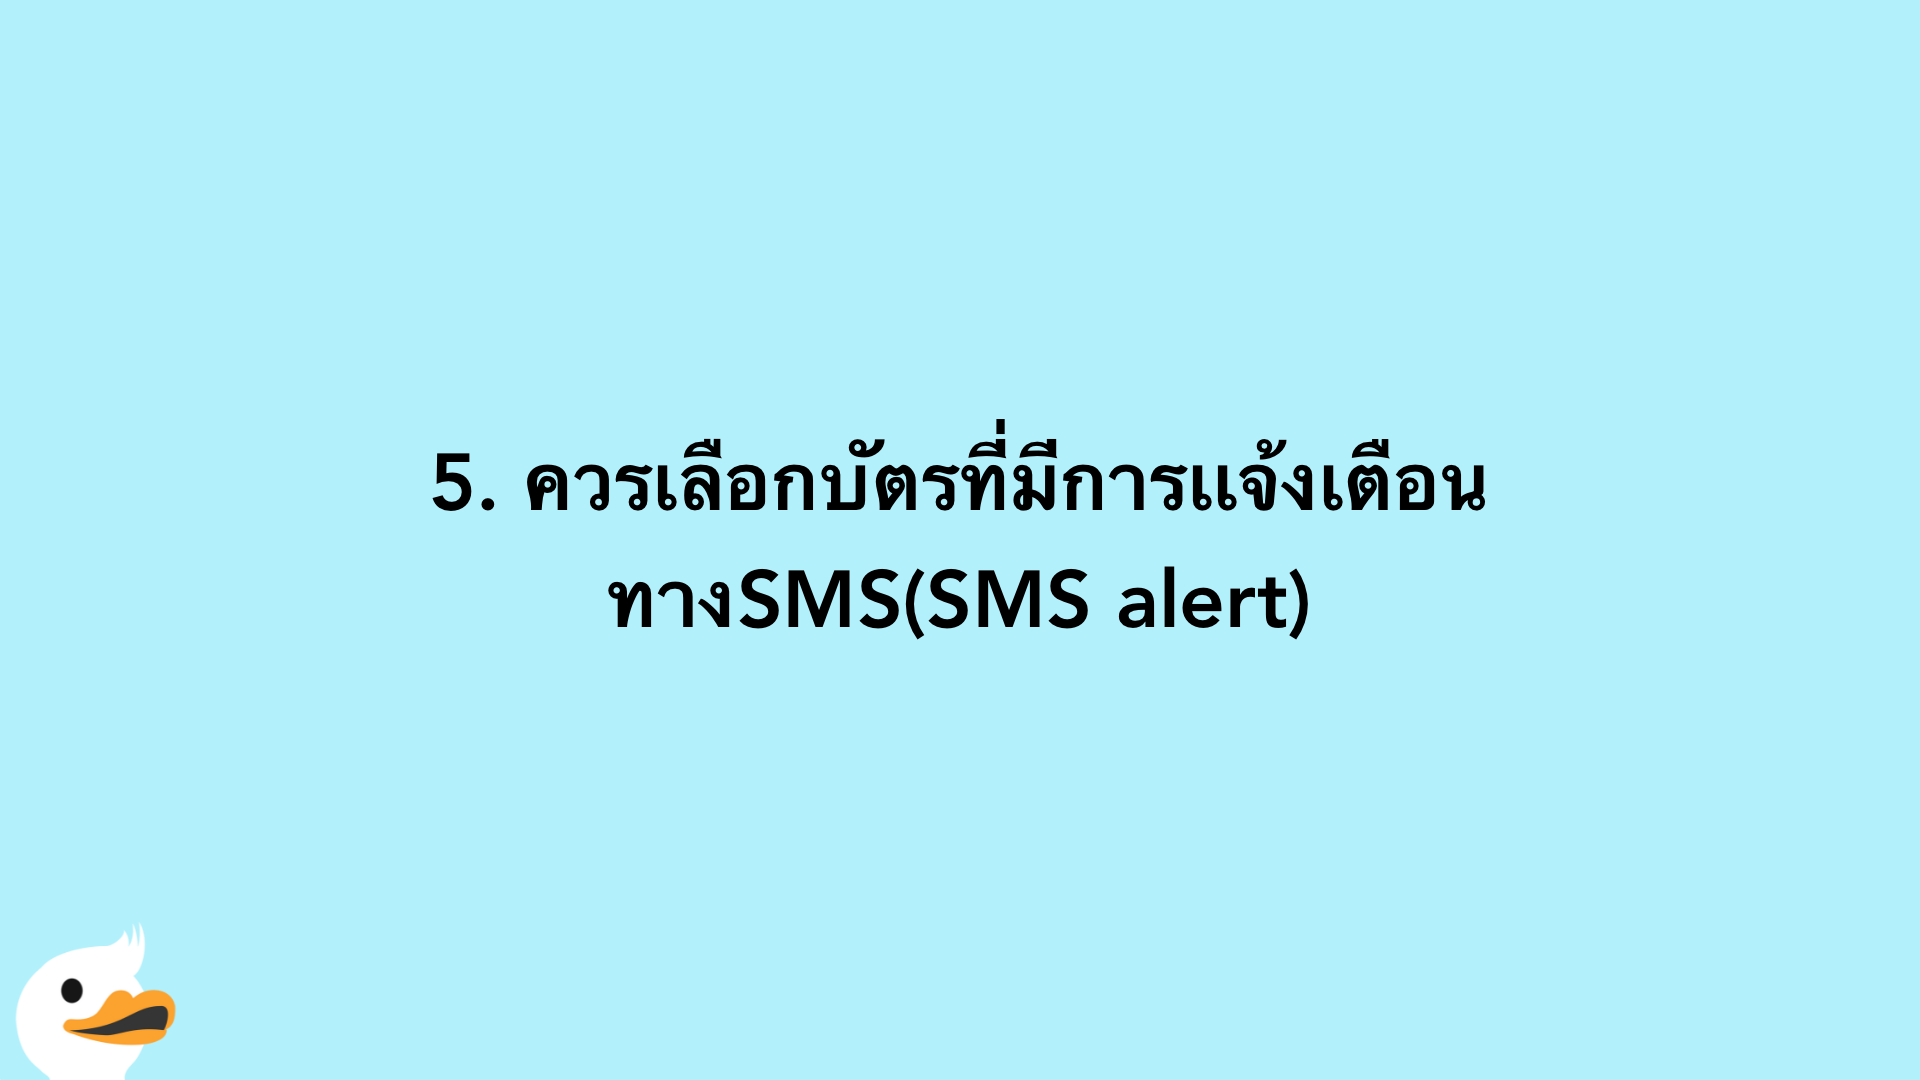 5. ควรเลือกบัตรที่มีการเเจ้งเตือนทางSMS(SMS alert)